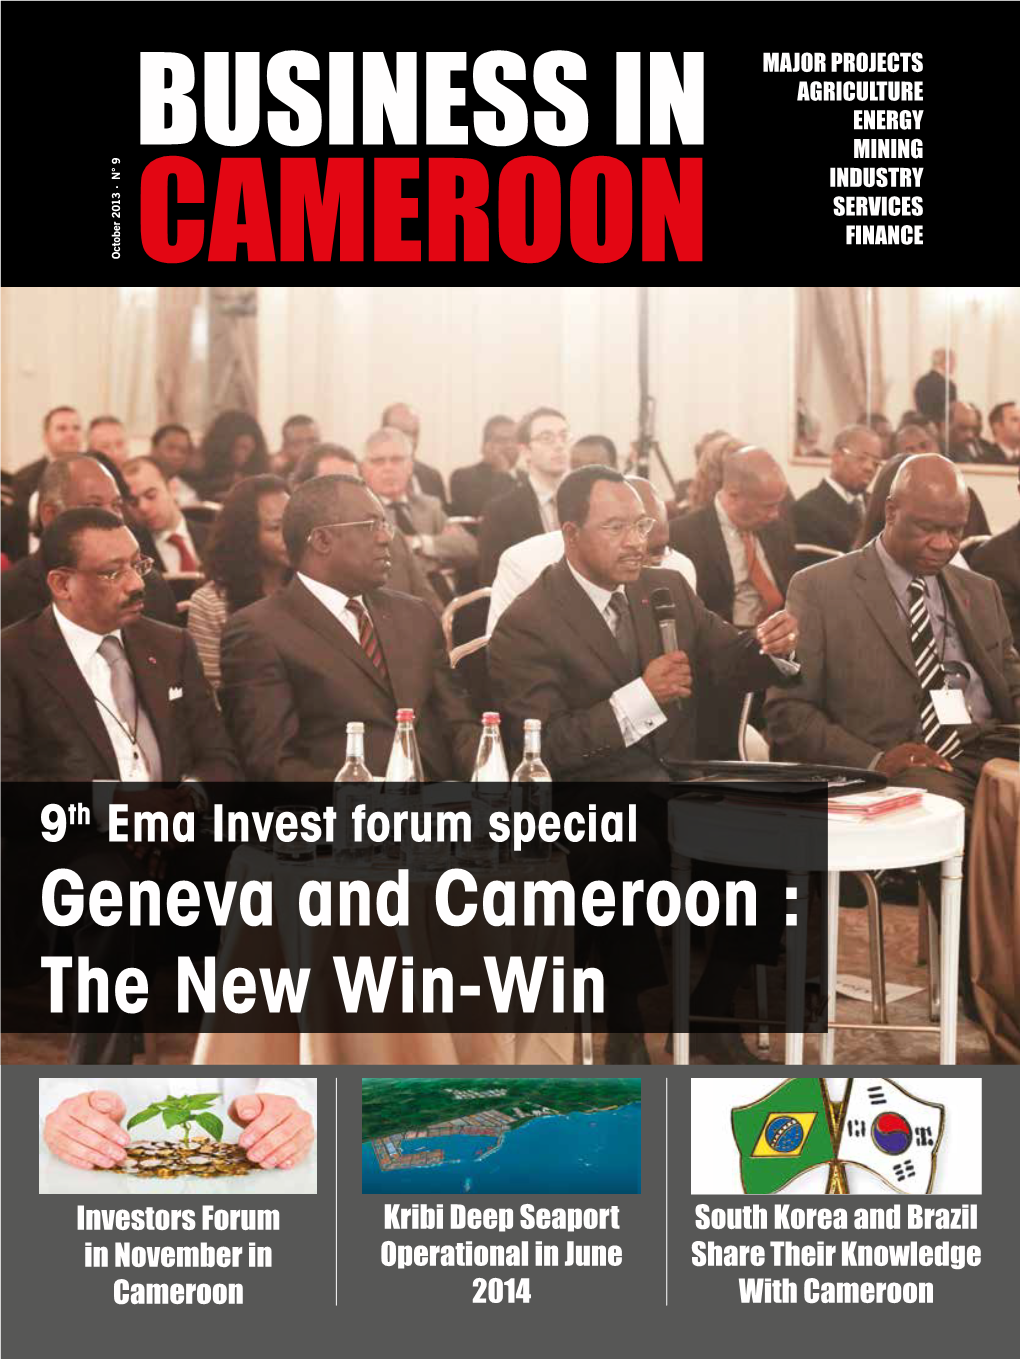 Geneva and Cameroon